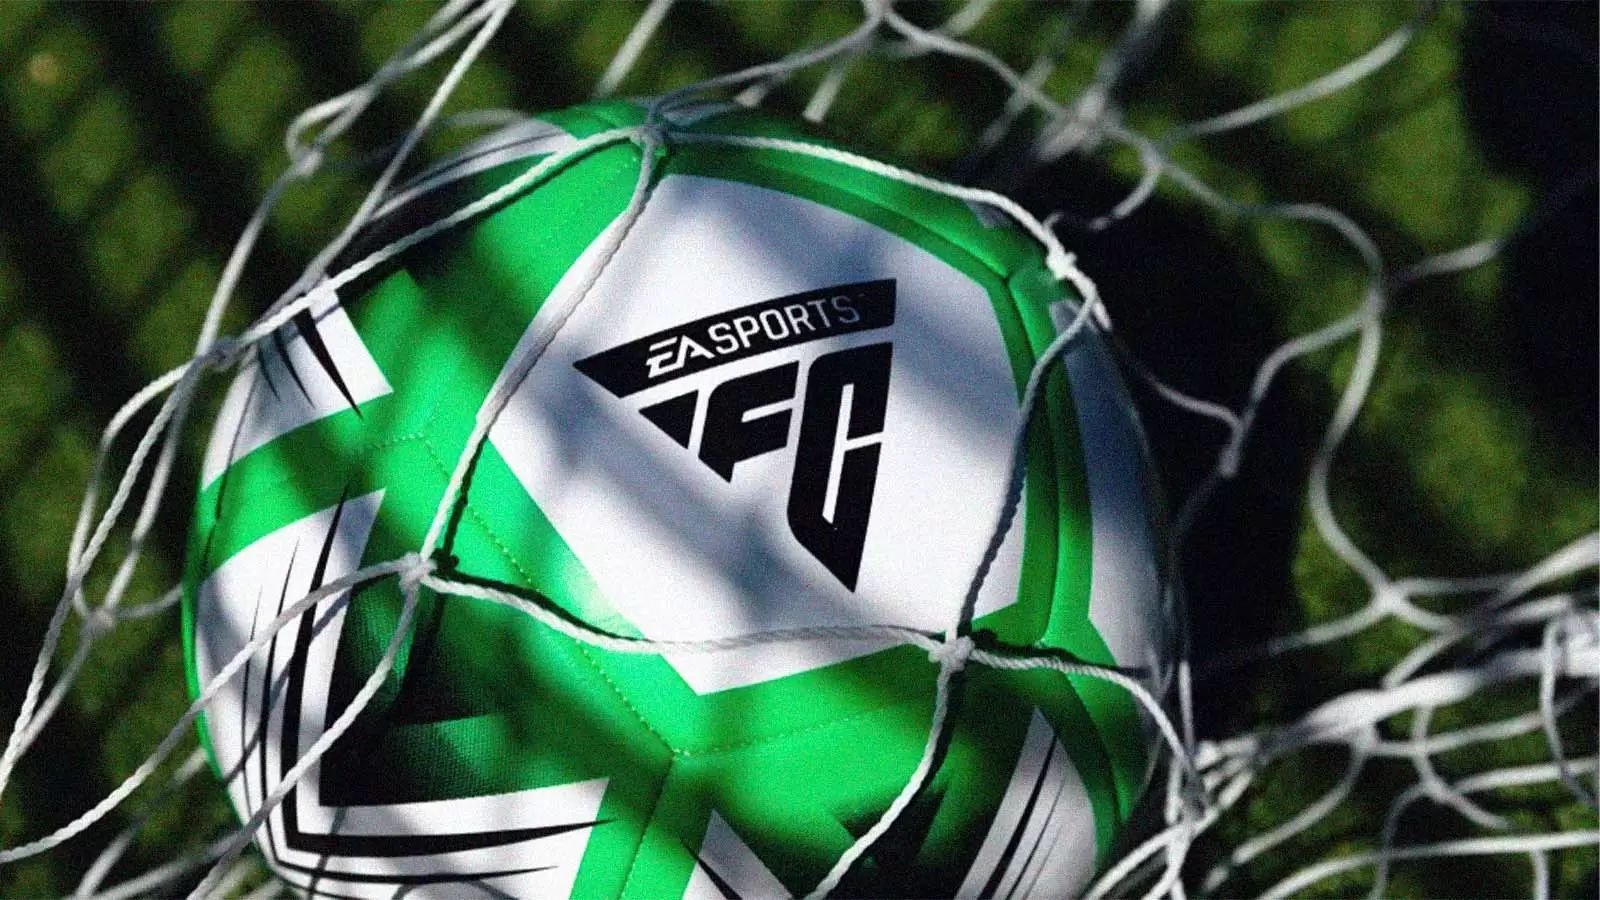 Fifa: EA confirma rompimento e revela nome do novo jogo de futebol